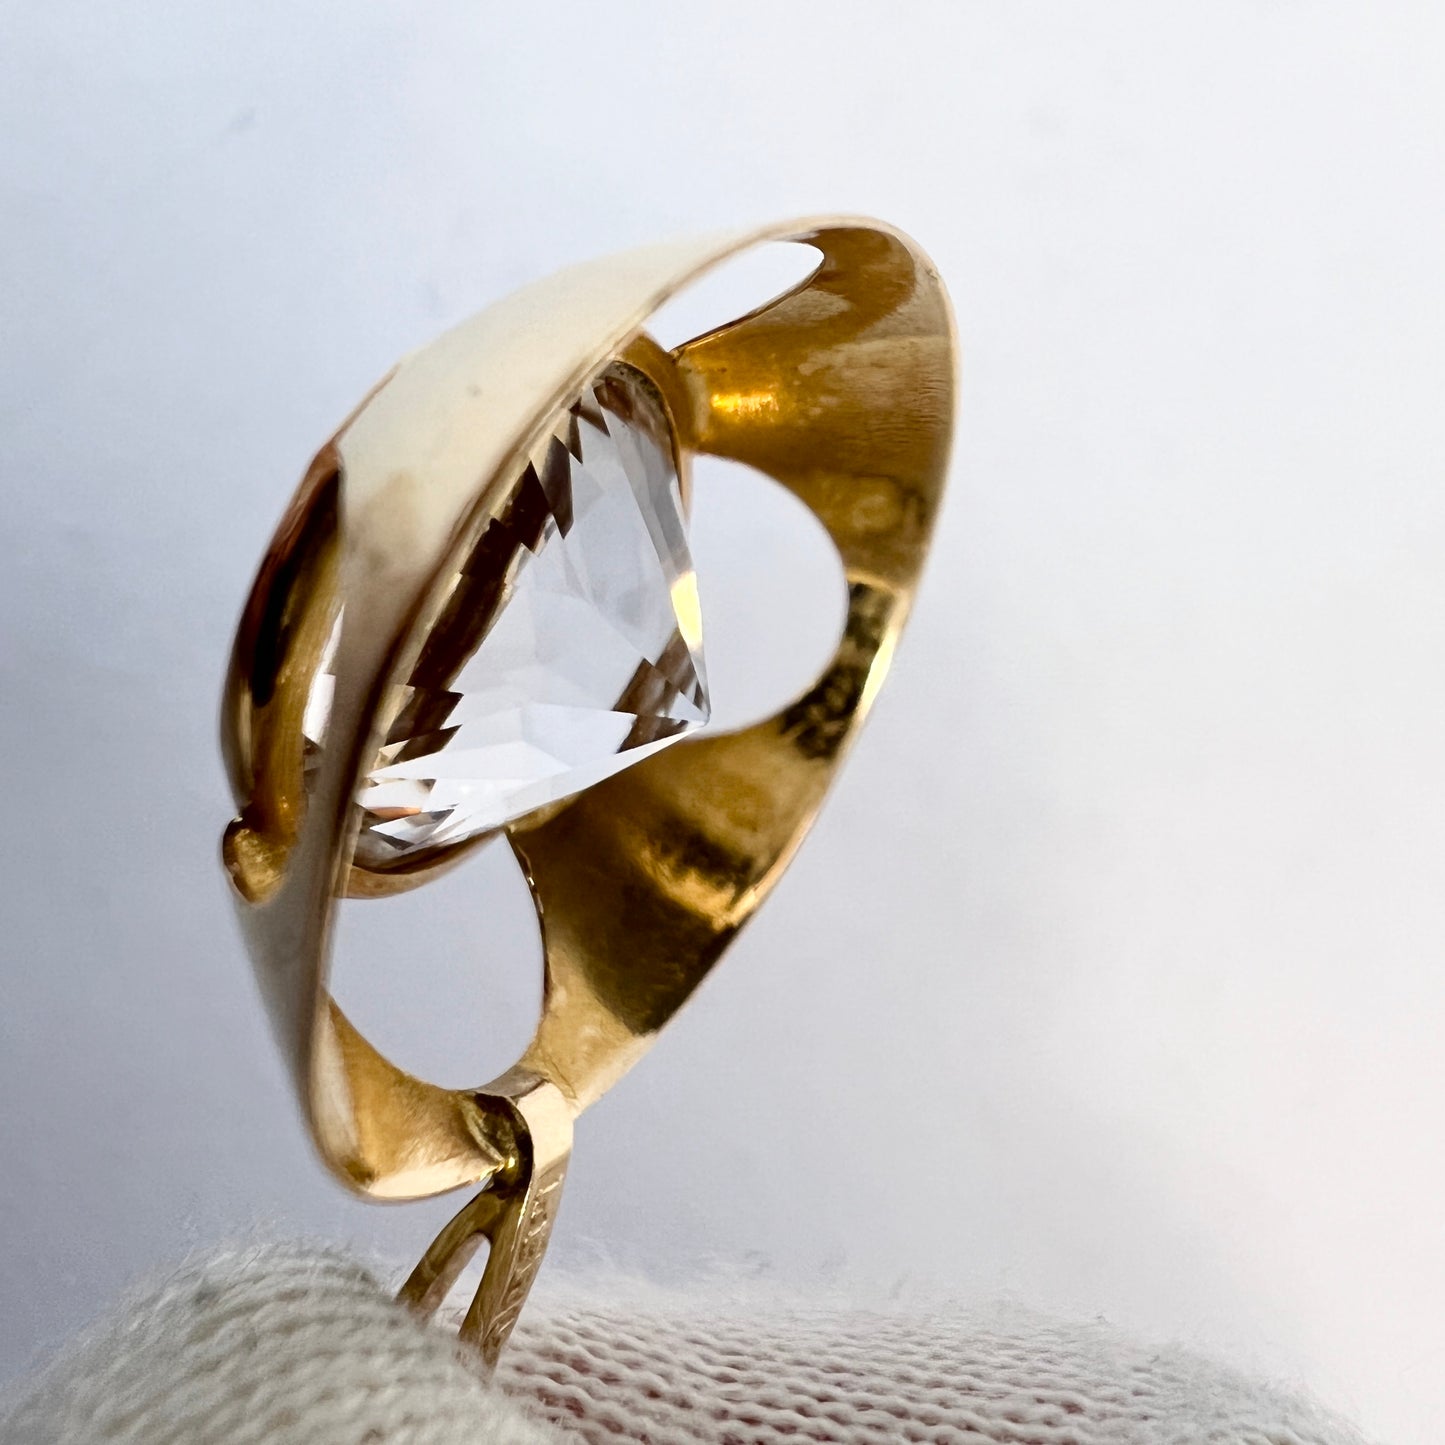 Bengt Hallberg, Sweden 1973. Vintage 18k Gold Rock Crystal Pendant.